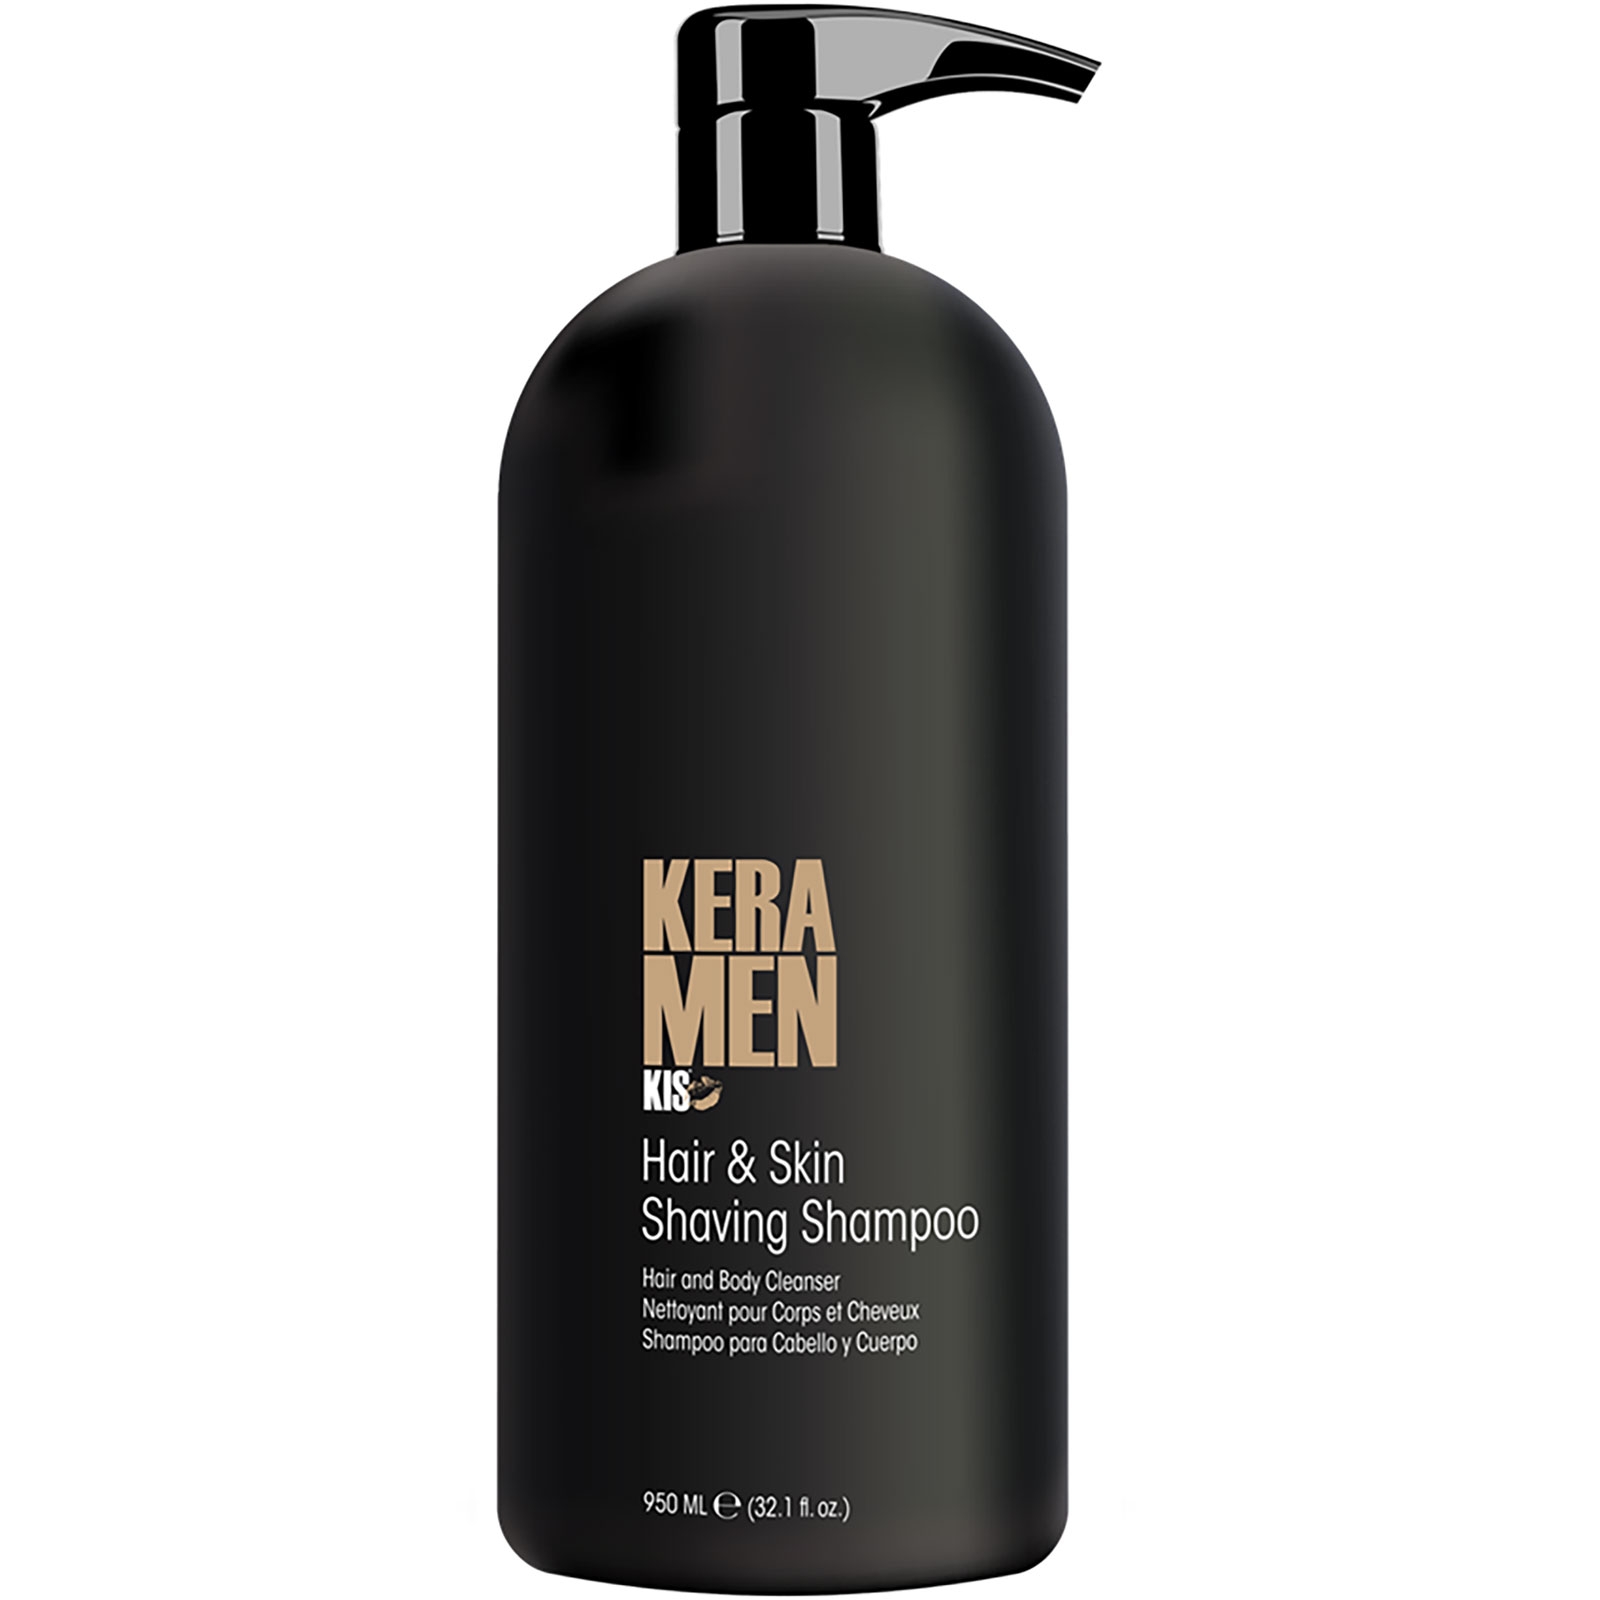 KIS - KeraMen - Hair&Skin Shaving Shampoo - 950 ml